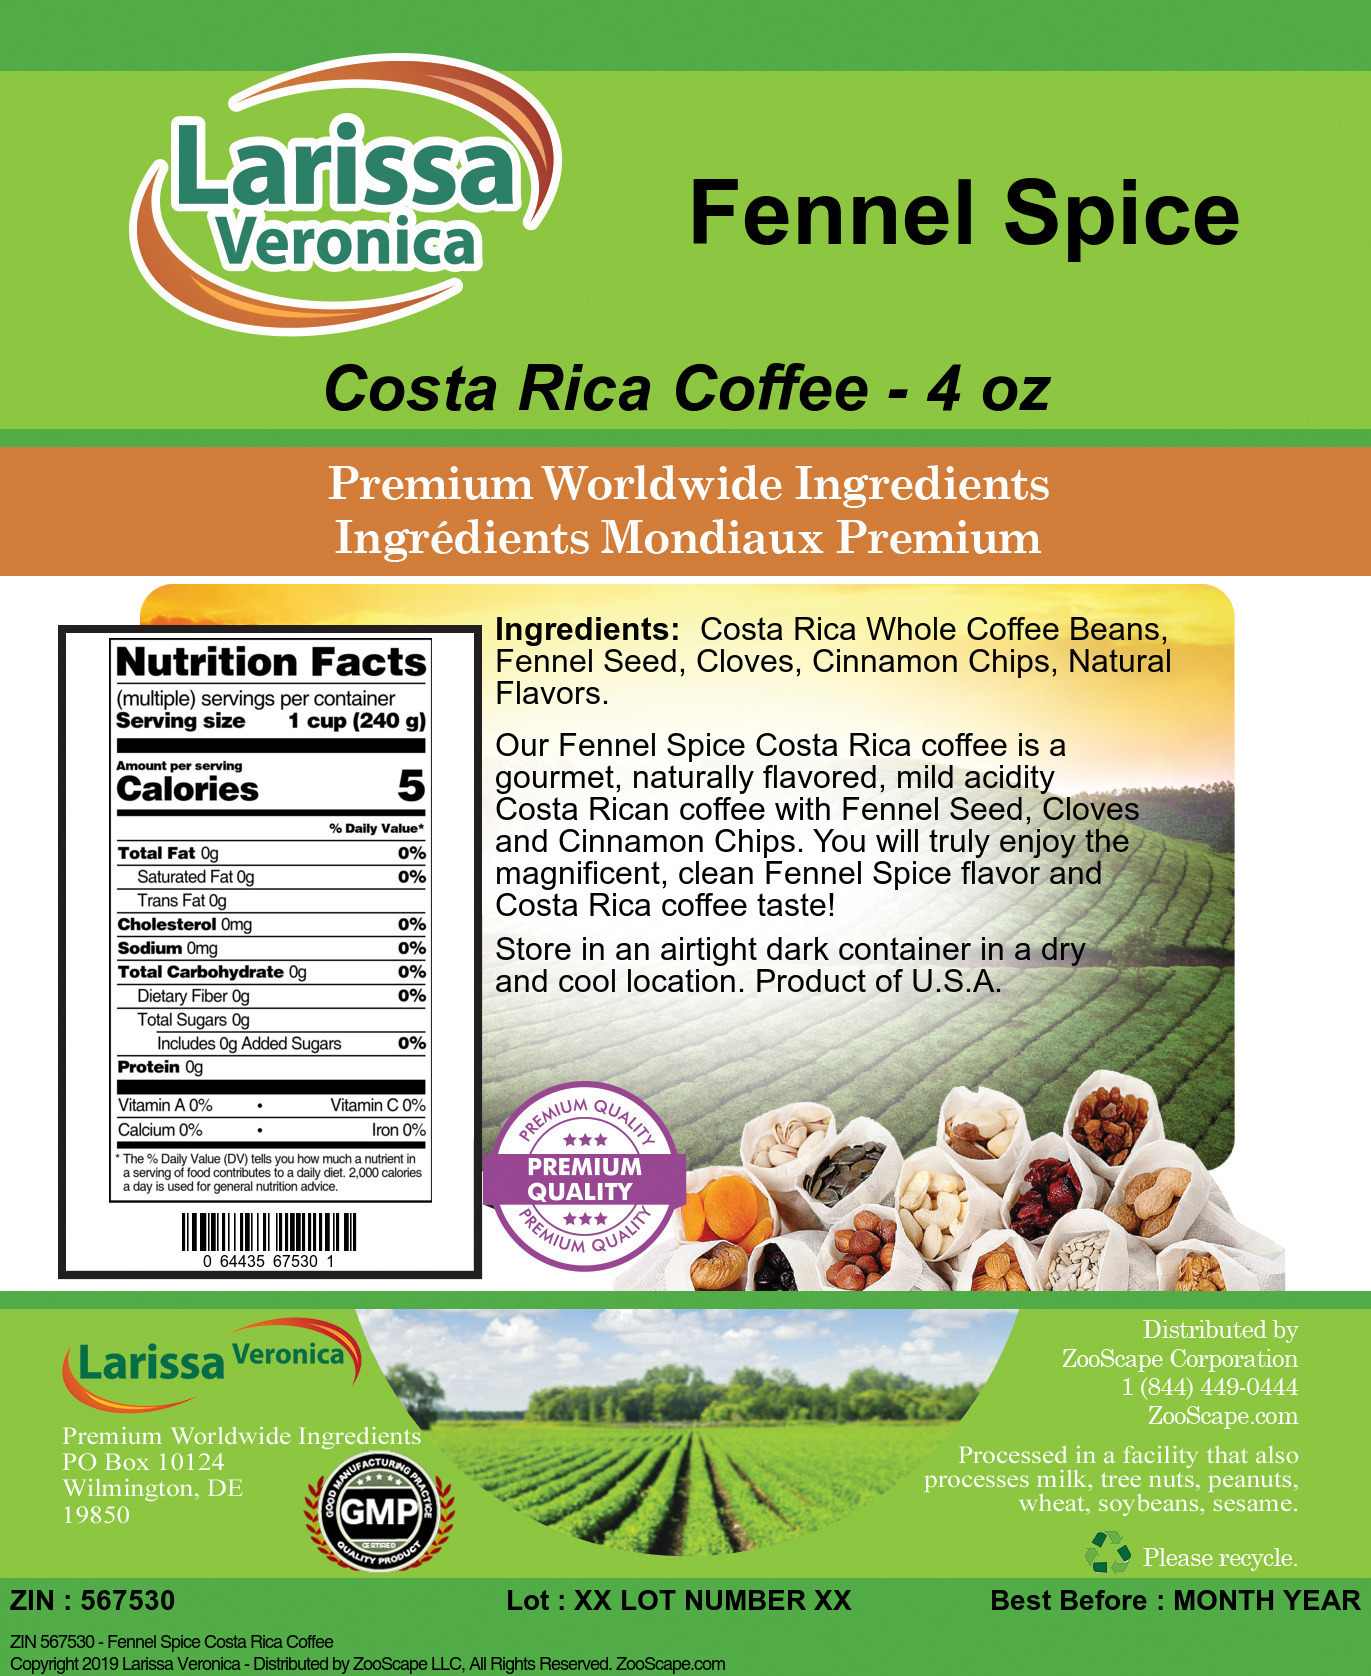 Fennel Spice Costa Rica Coffee - Label